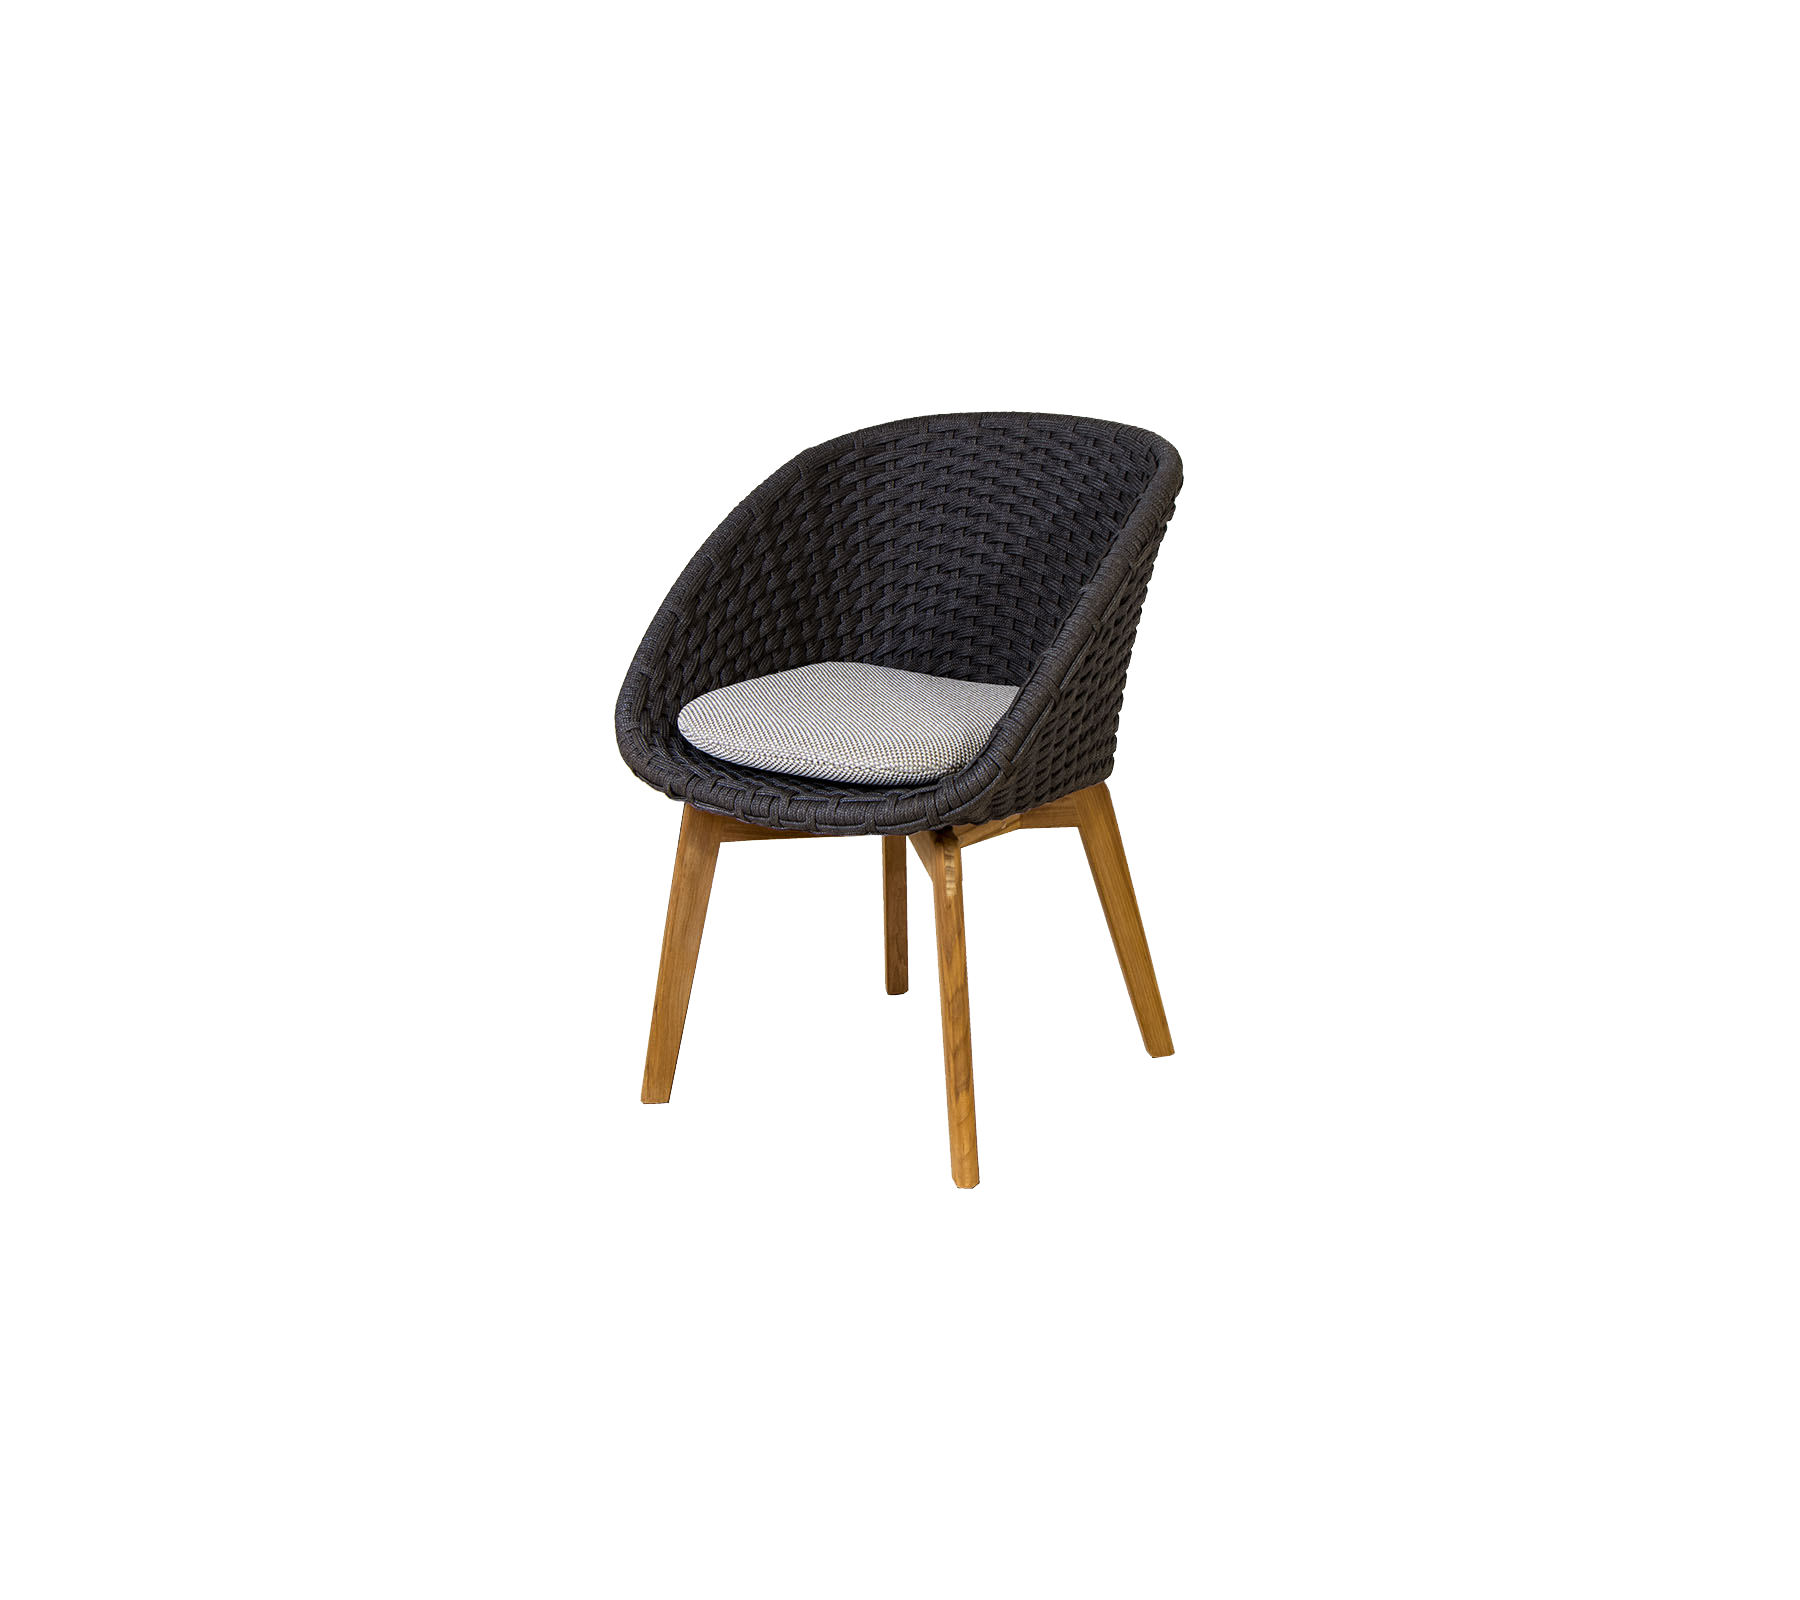 Cushion, Peacock chair